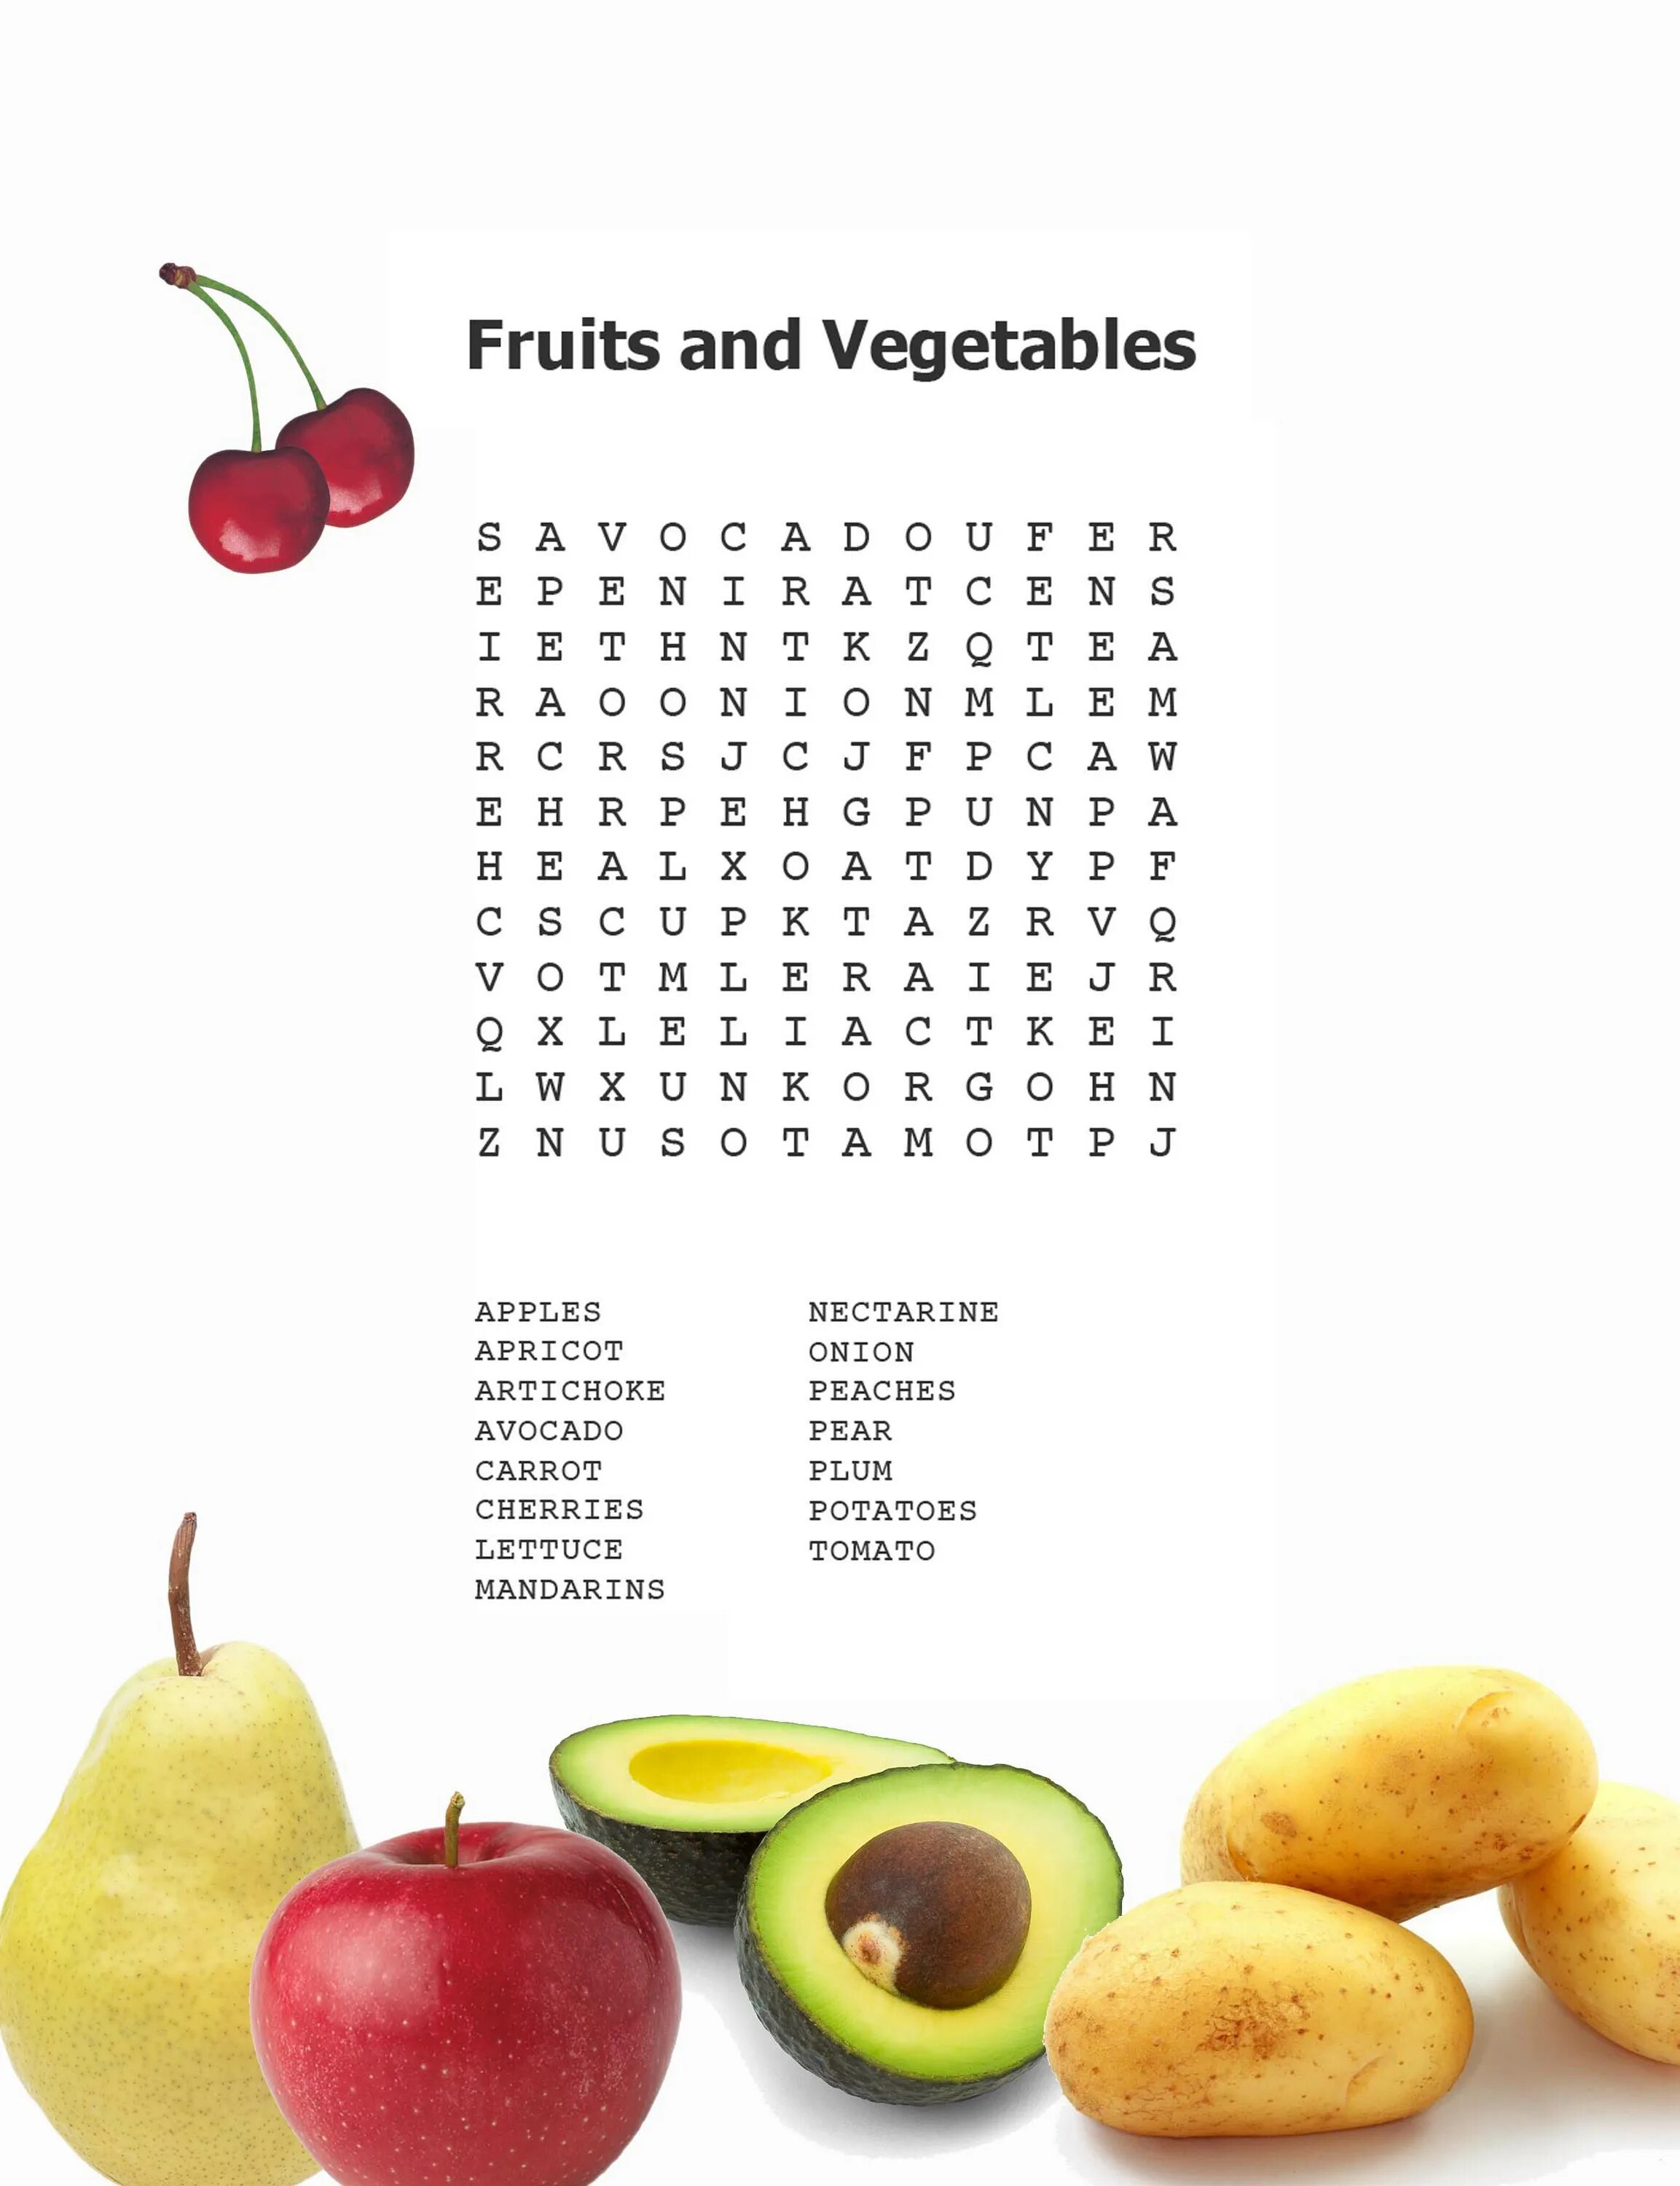 Fruits and Vegetables задания для детей. Fruits and Vegetables Wordsearch for Kids. Wordsearch Fruits and Vegetables с ответами. Фрукты и овощи на английском задания.